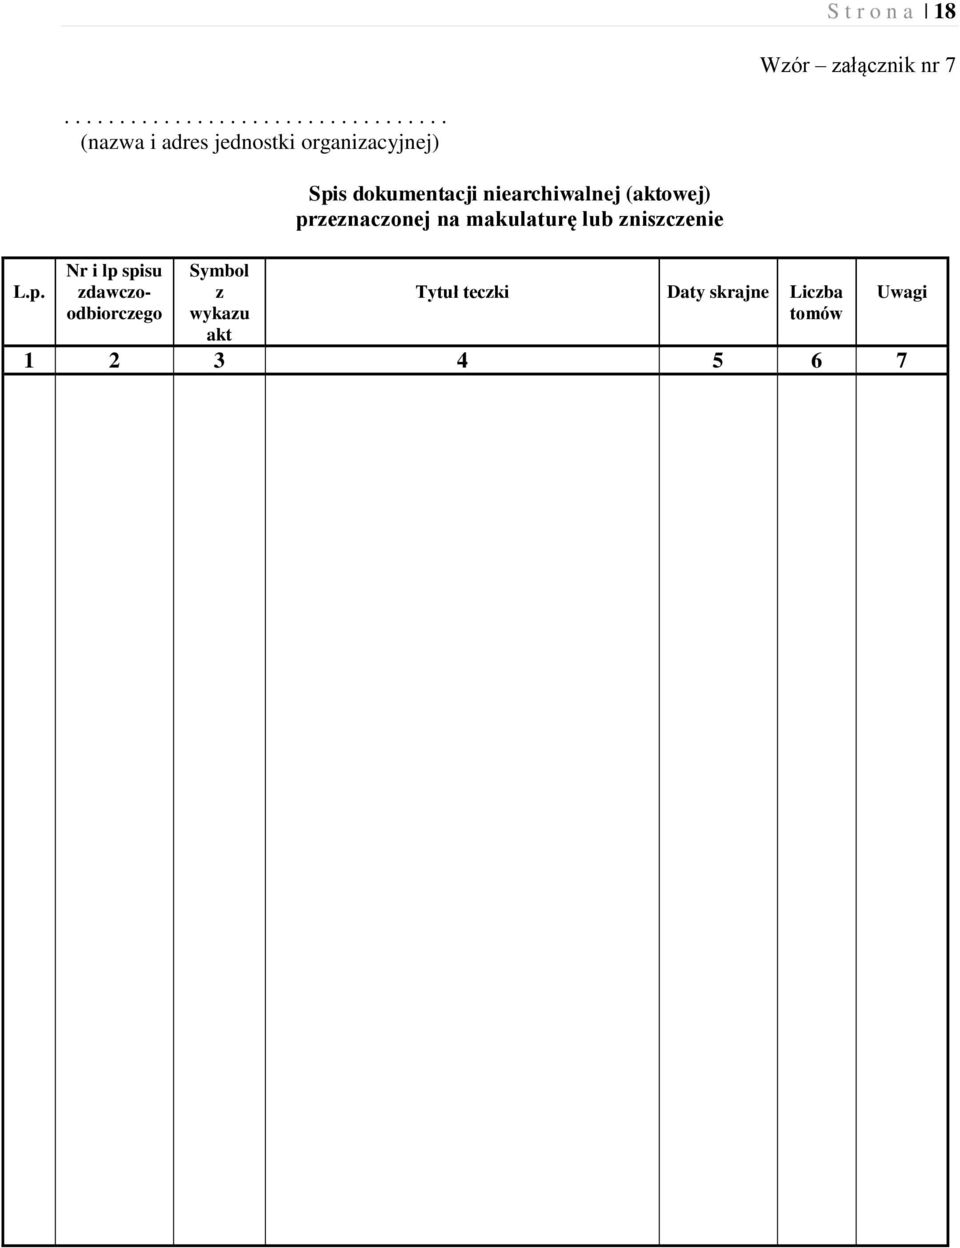 Nr i lp spisu zdawczoodbiorczego Symbol z wykazu akt Spis dokumentacji